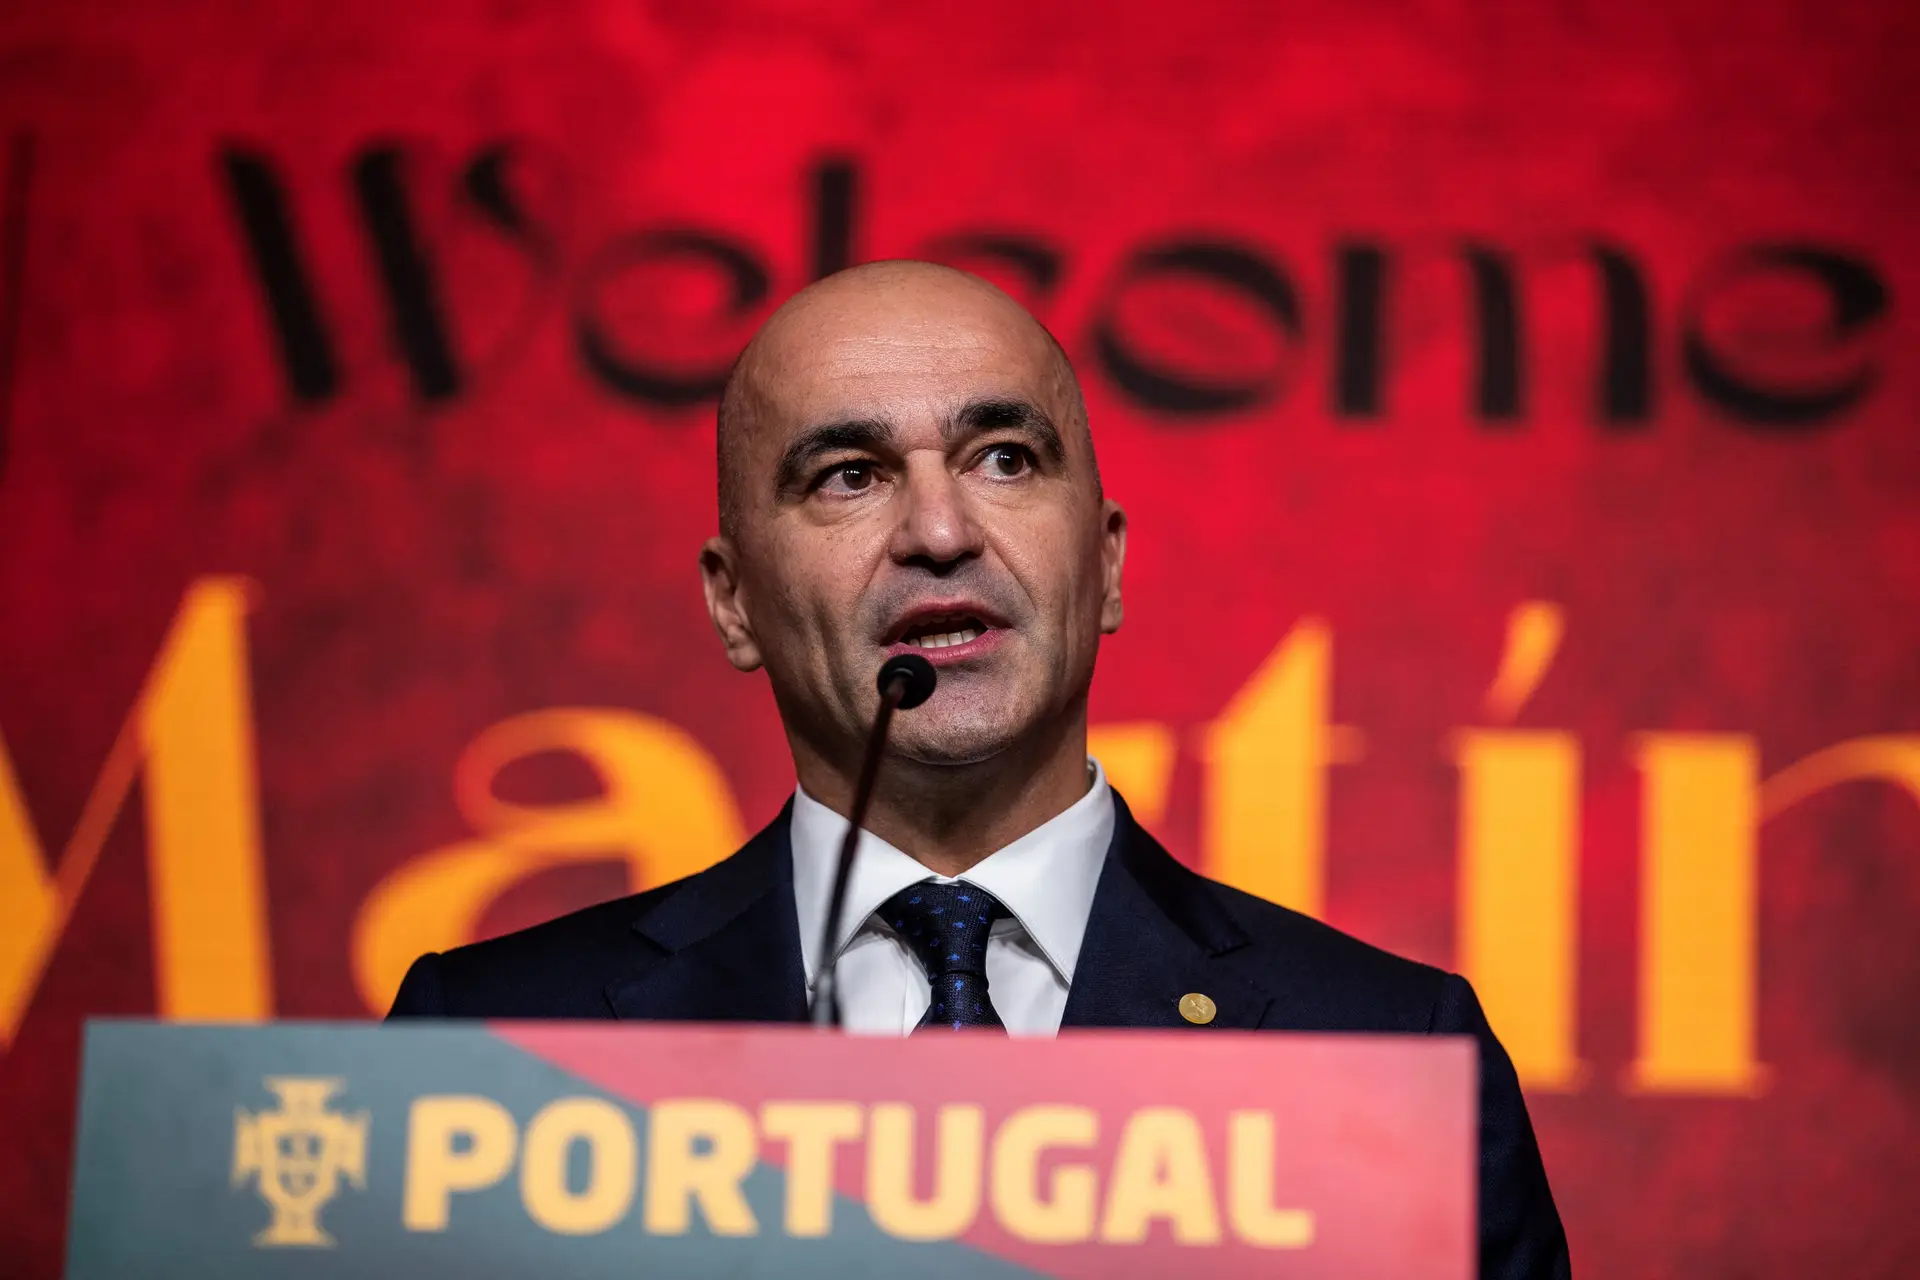 Portugal e Escócia só 'sabem' ganhar no apuramento para o Euro2024